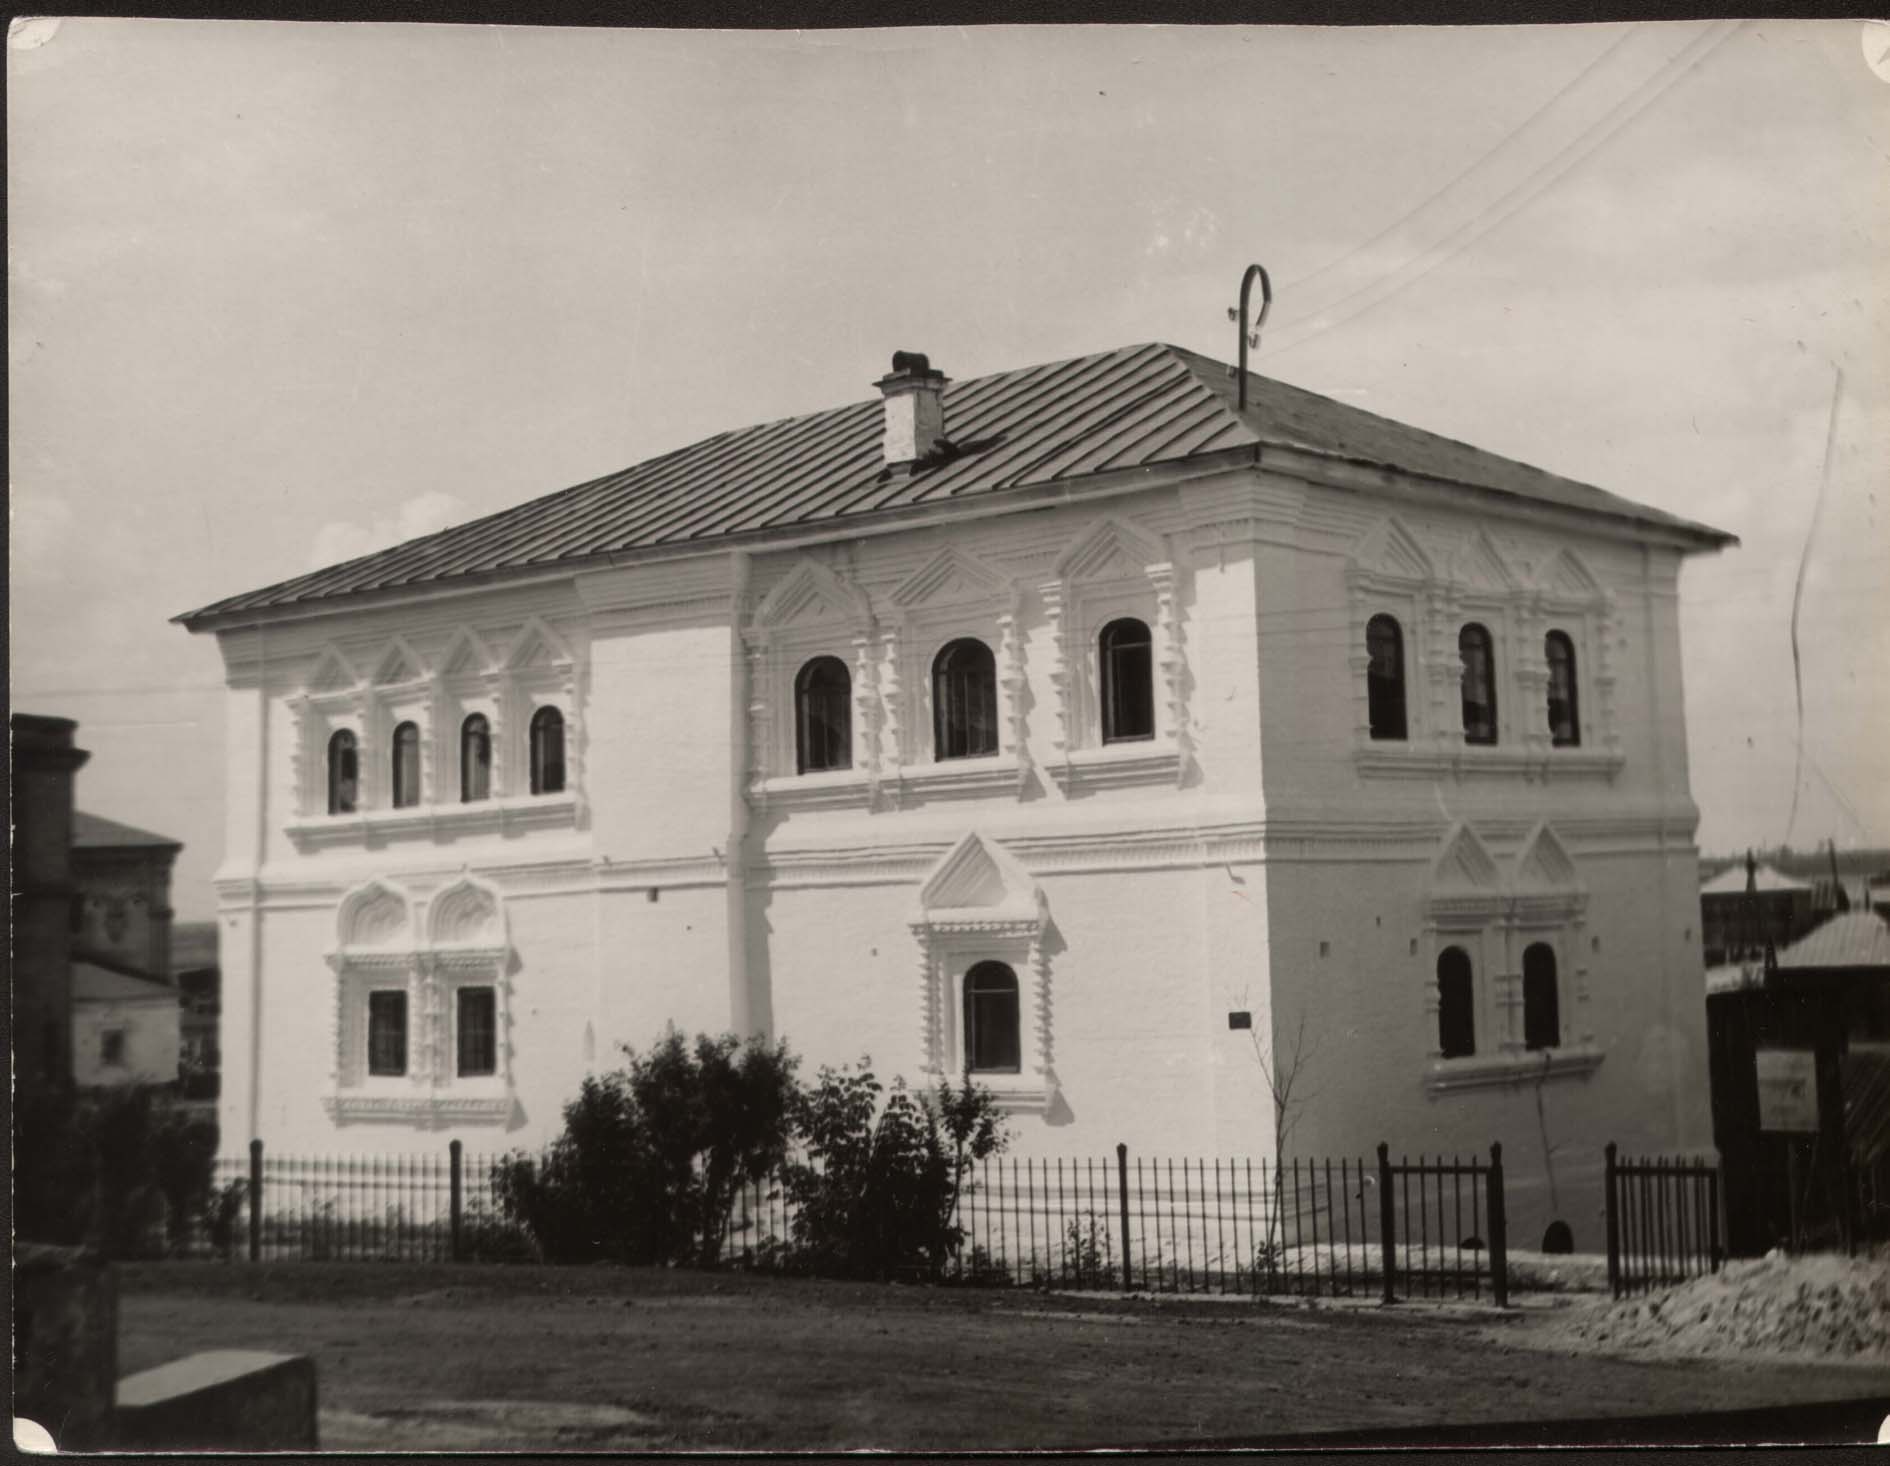  Дом воеводы после реставрации. 1961 год.